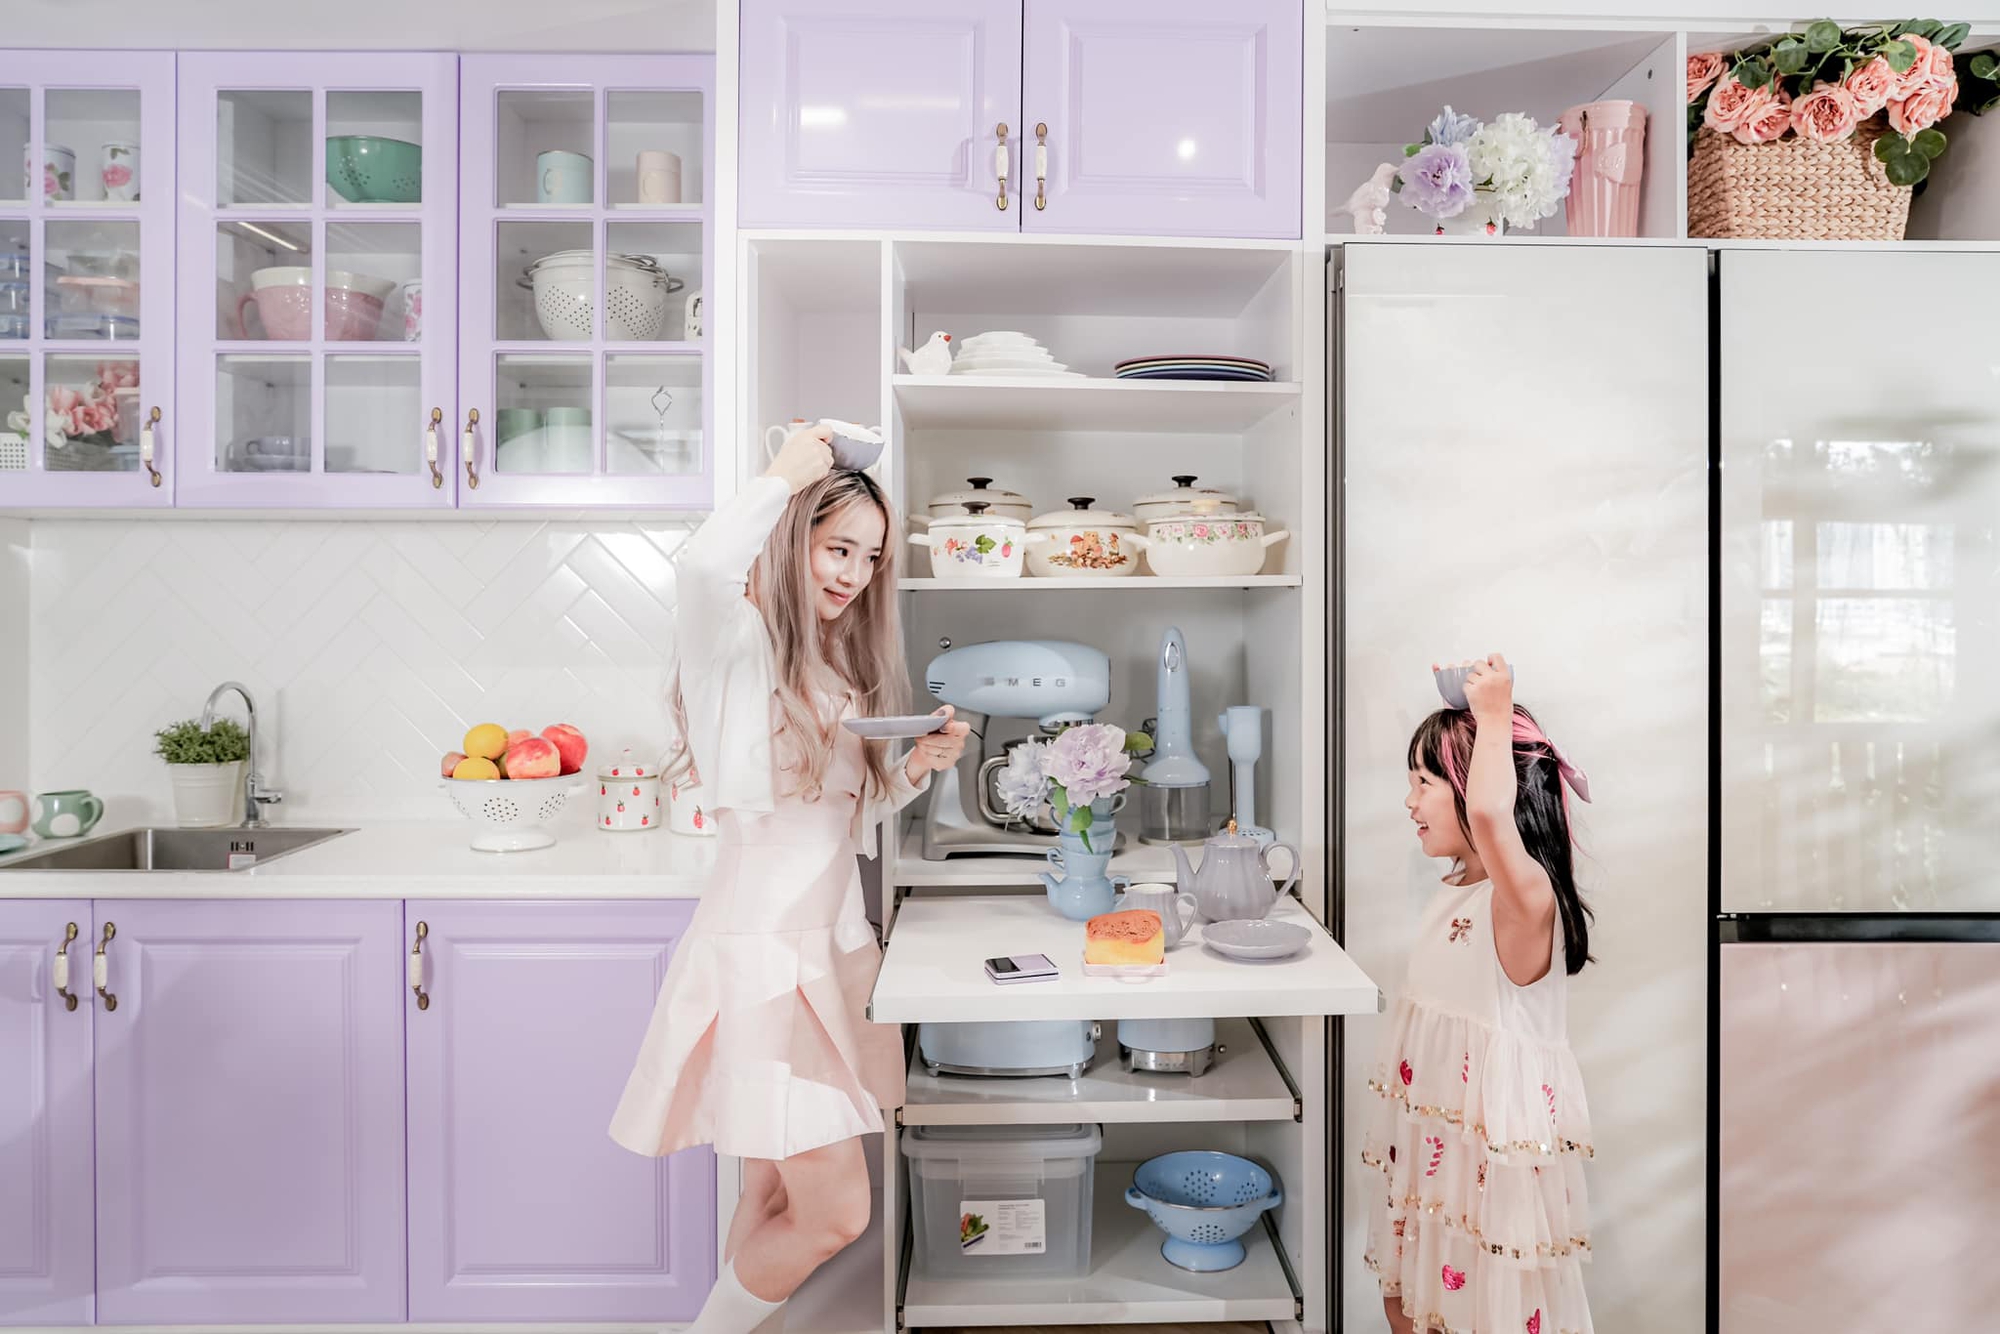 Góc bếp màu tím pastel với đủ các thiết bị hiện đại của mẹ 3 con ở TP. HCM-8